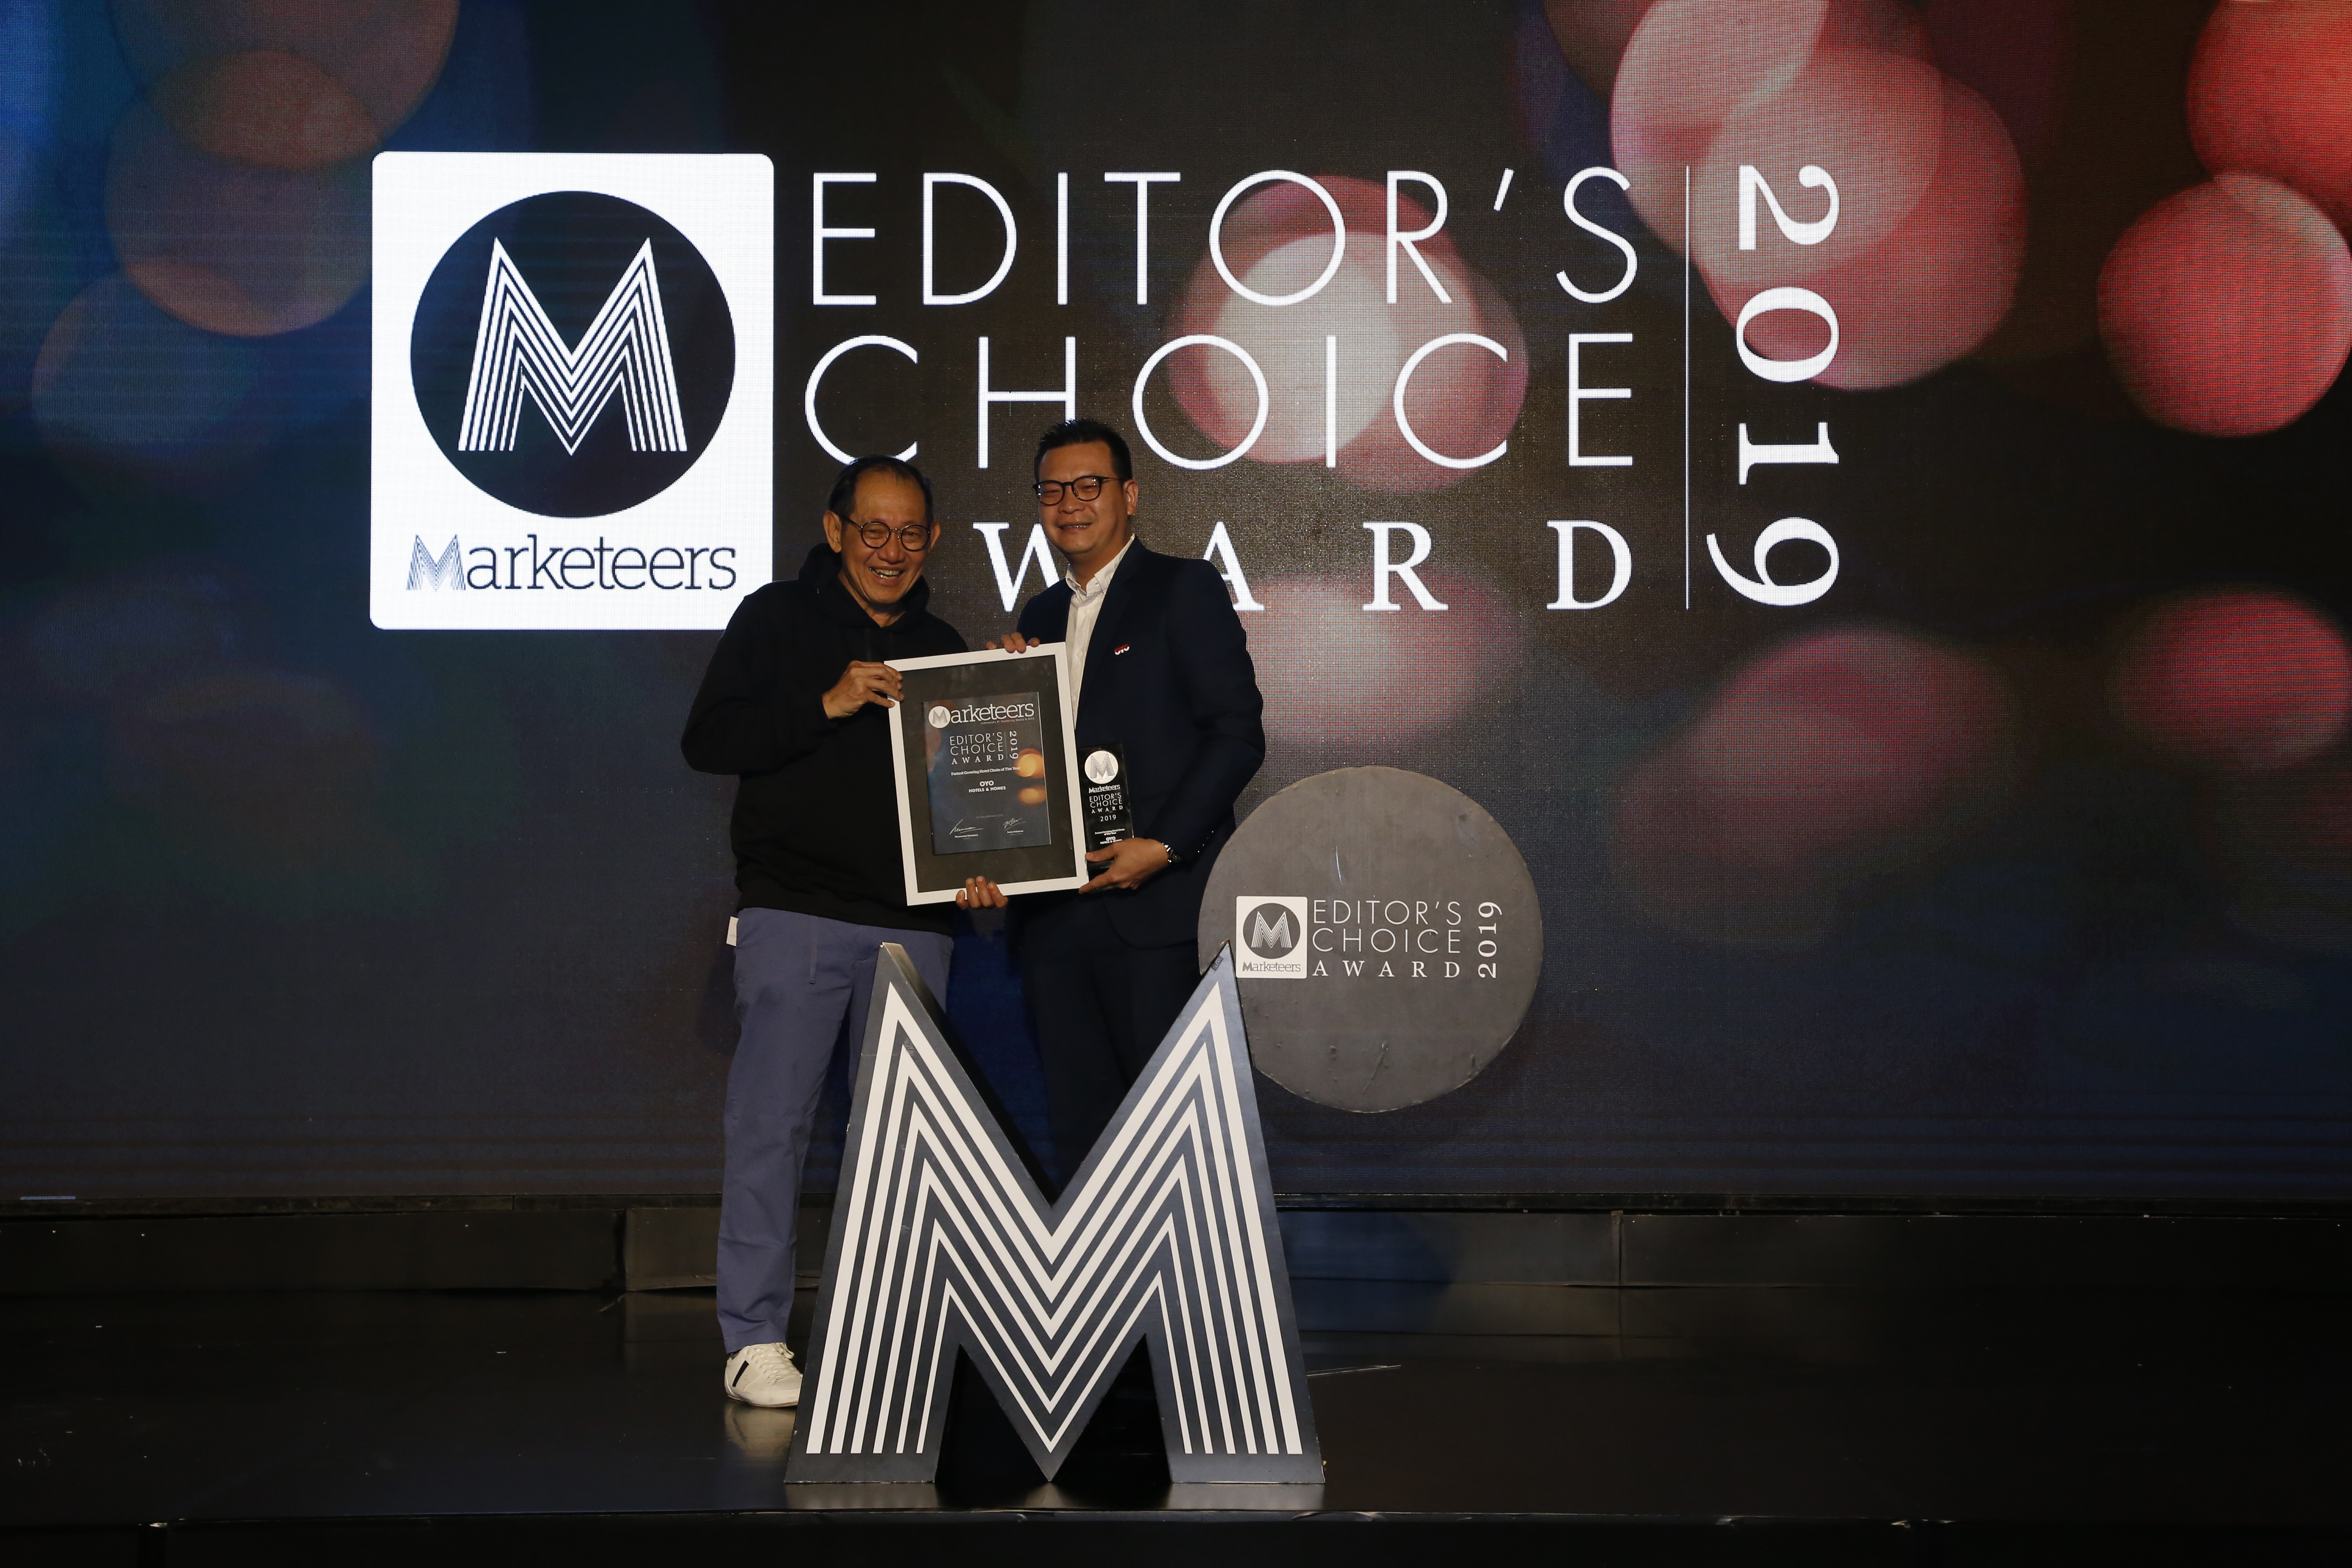 OYO Raih Penghargaan Marketeers Editor’s Choice 2019